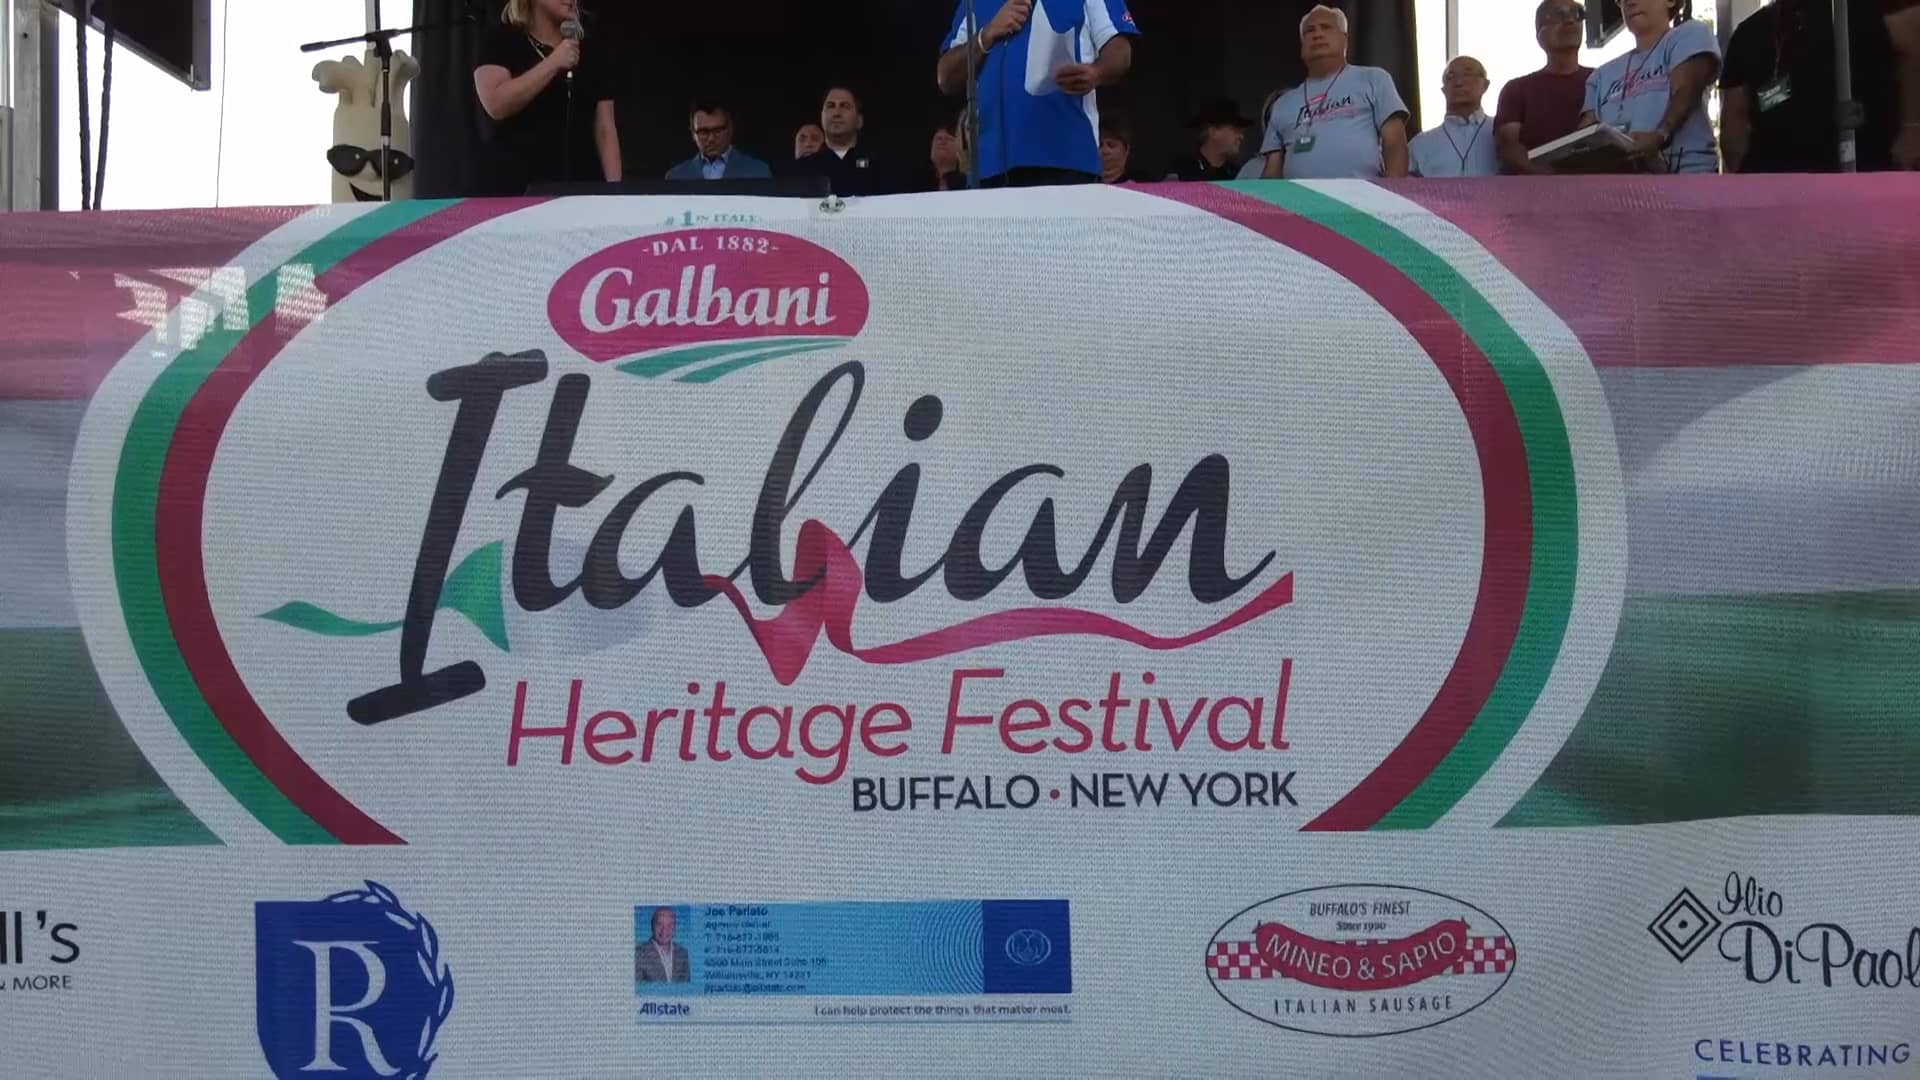 Galbani Italian Heritage Festival 2022.mp4 on Vimeo